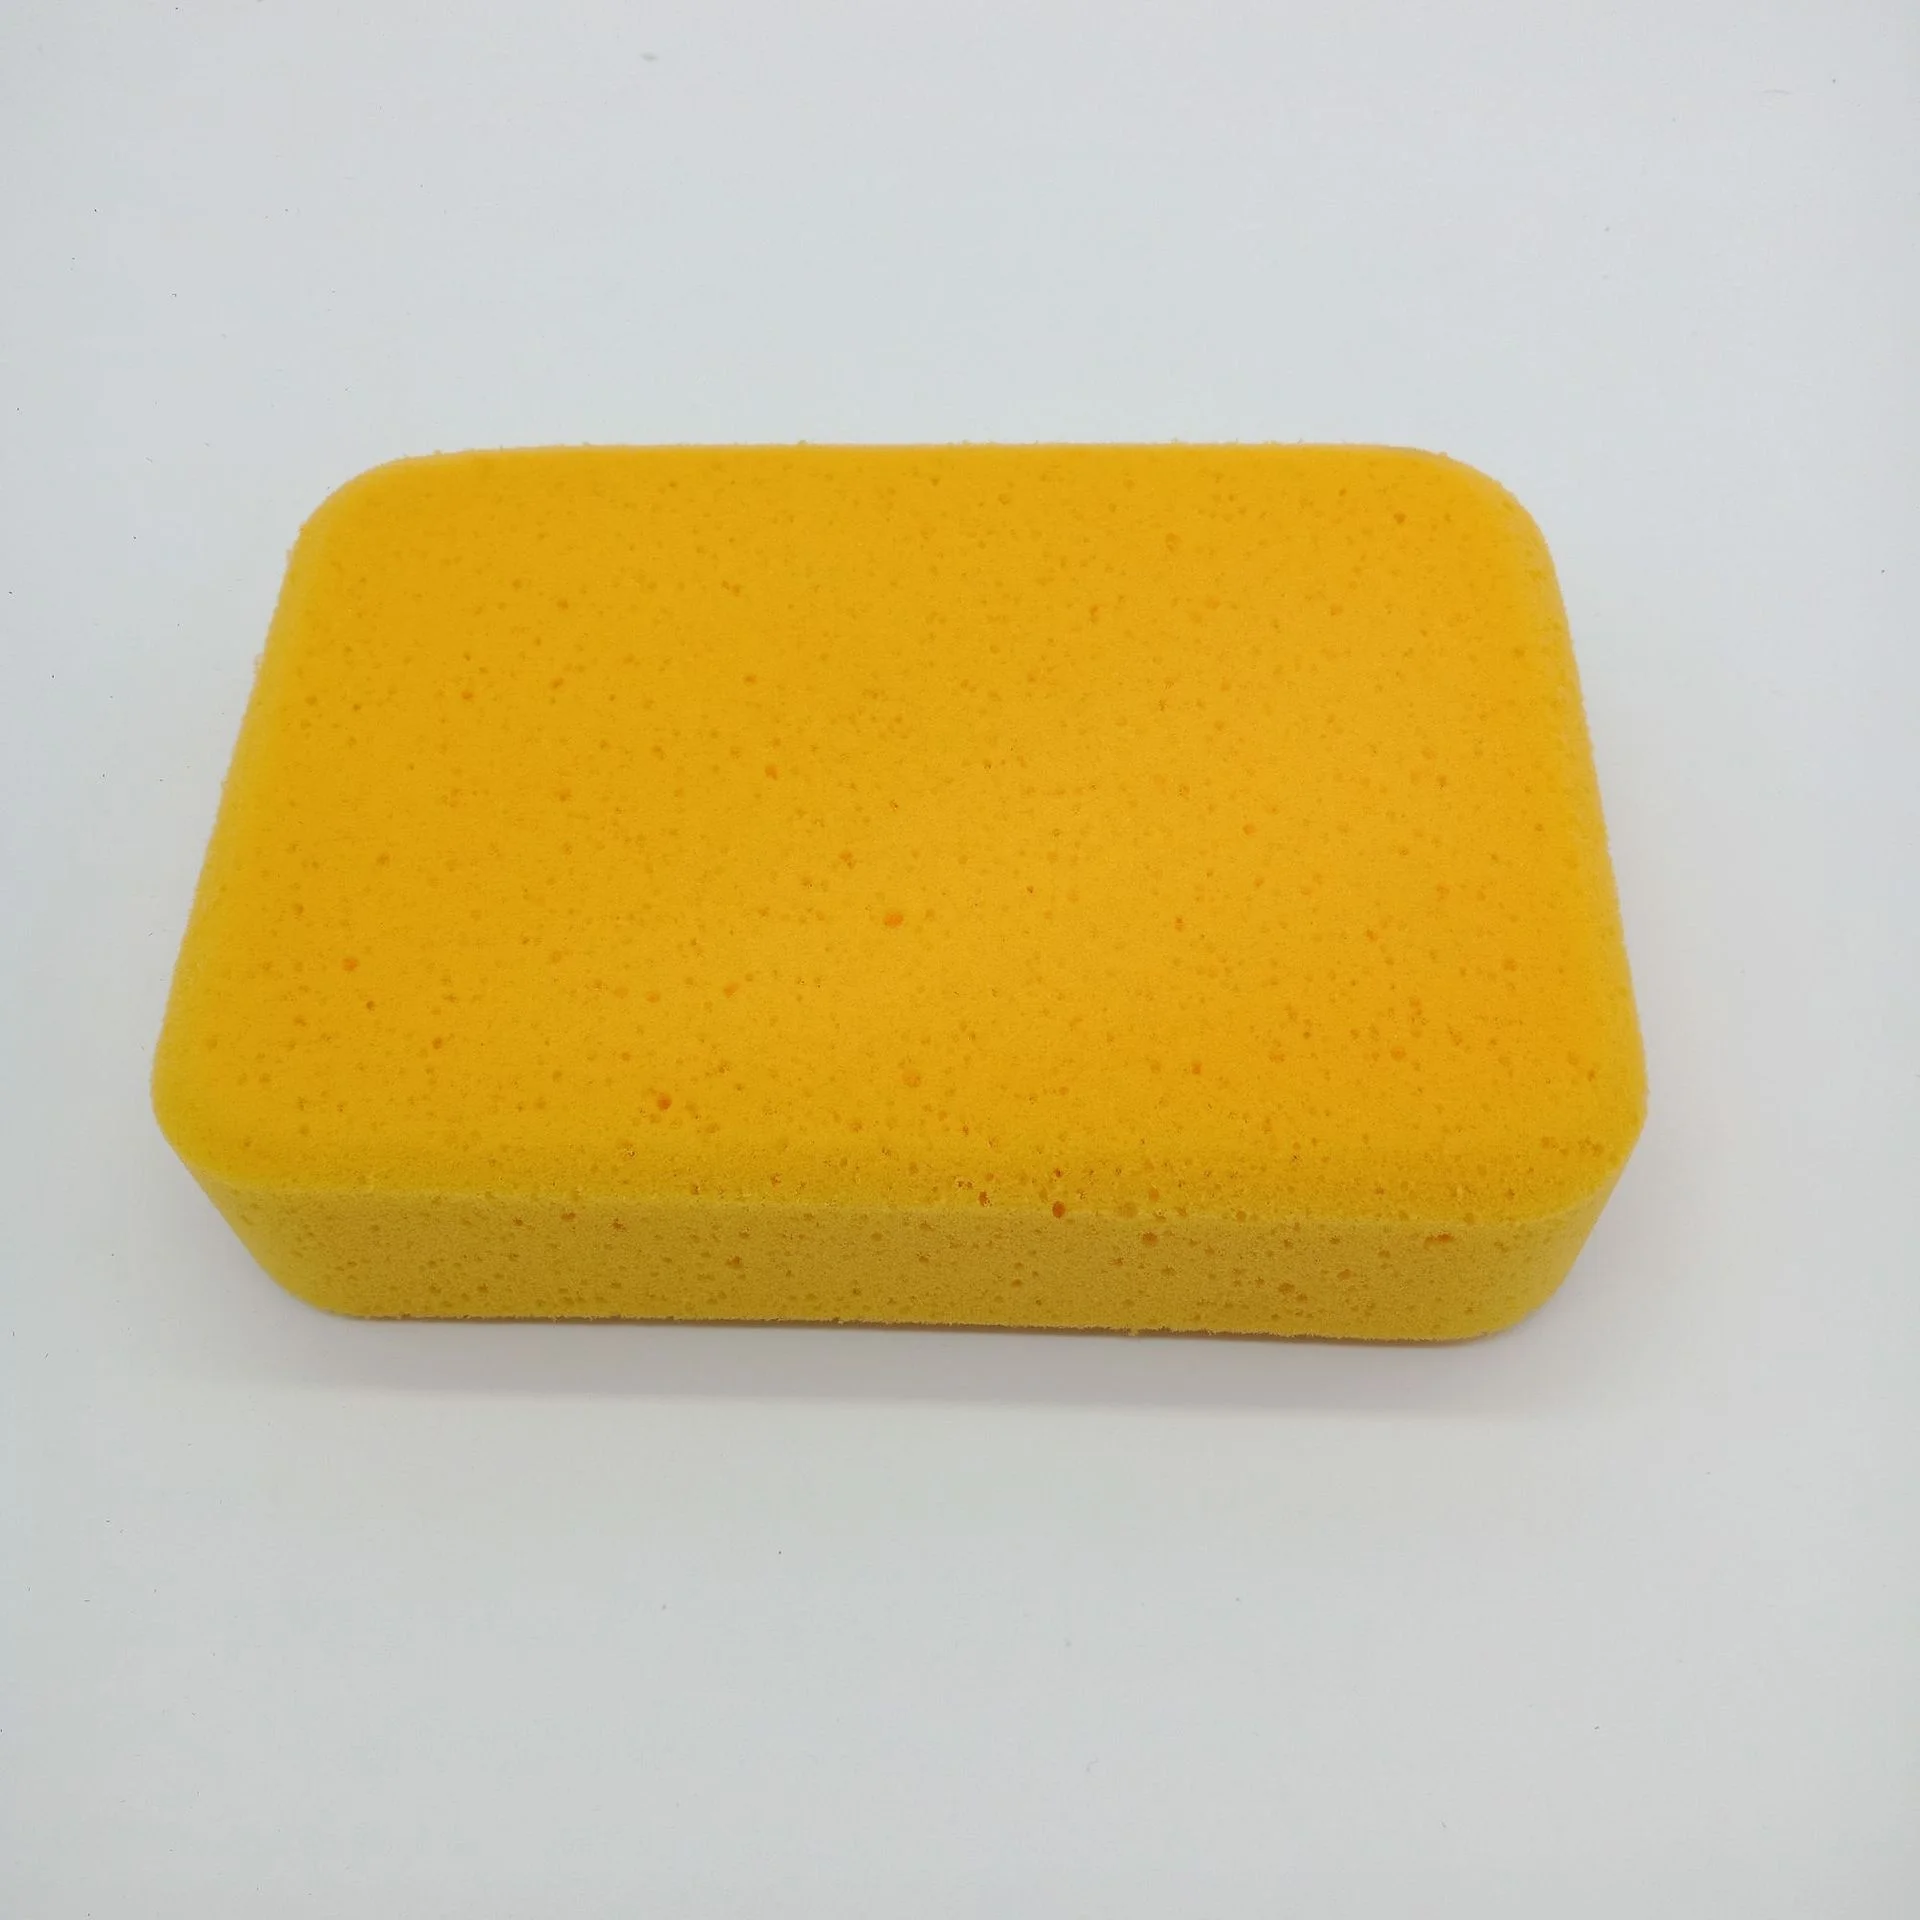 
High Density Ceramic Tile Grouting Sponge Special Cleaning Sponge Ceramic Tile Cleaning Sponge 